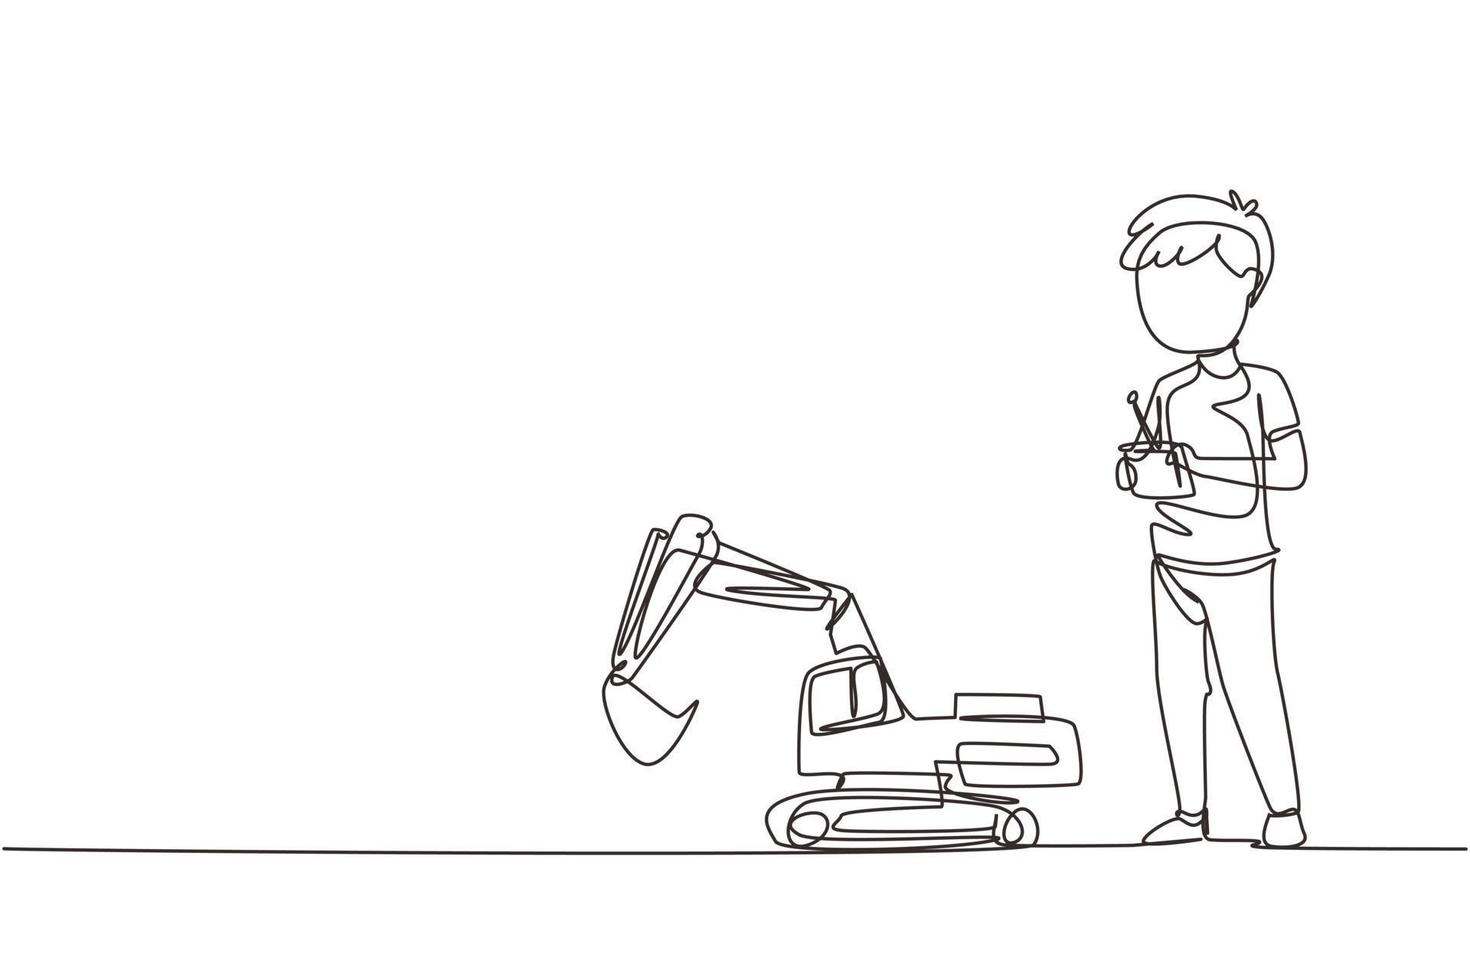 niño de dibujo de una sola línea continua jugando con un juguete de excavadora a control remoto. niños jugando con una excavadora de juguete electrónica con control remoto en las manos. ilustración de vector de diseño gráfico de una línea